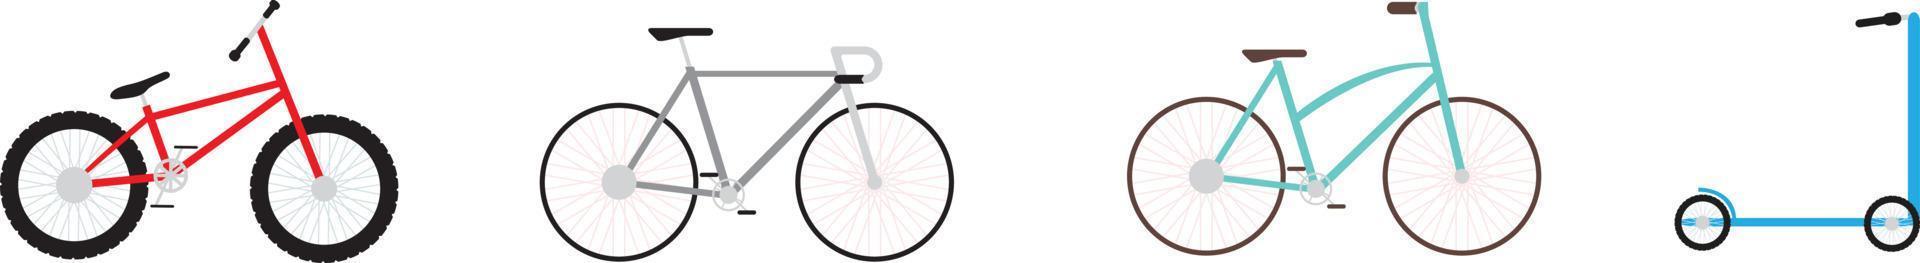 fiets, scootmobiel. stuurapparaten voor sport op een witte achtergrond vector